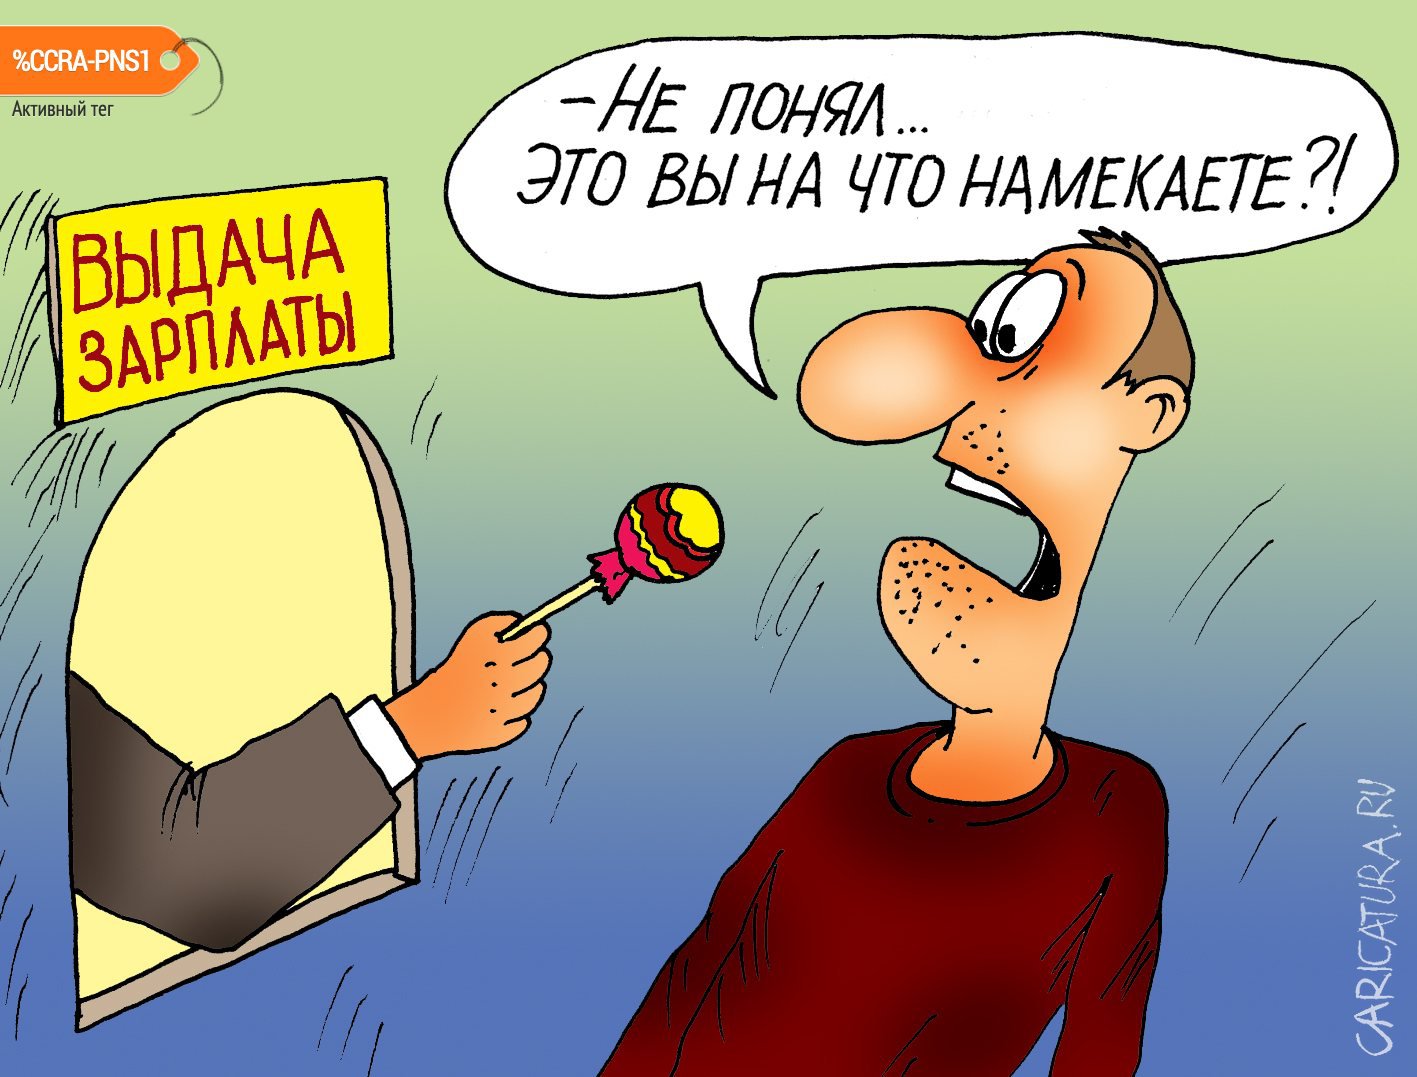 Карикатура "Денег нет", Алексей Булатов